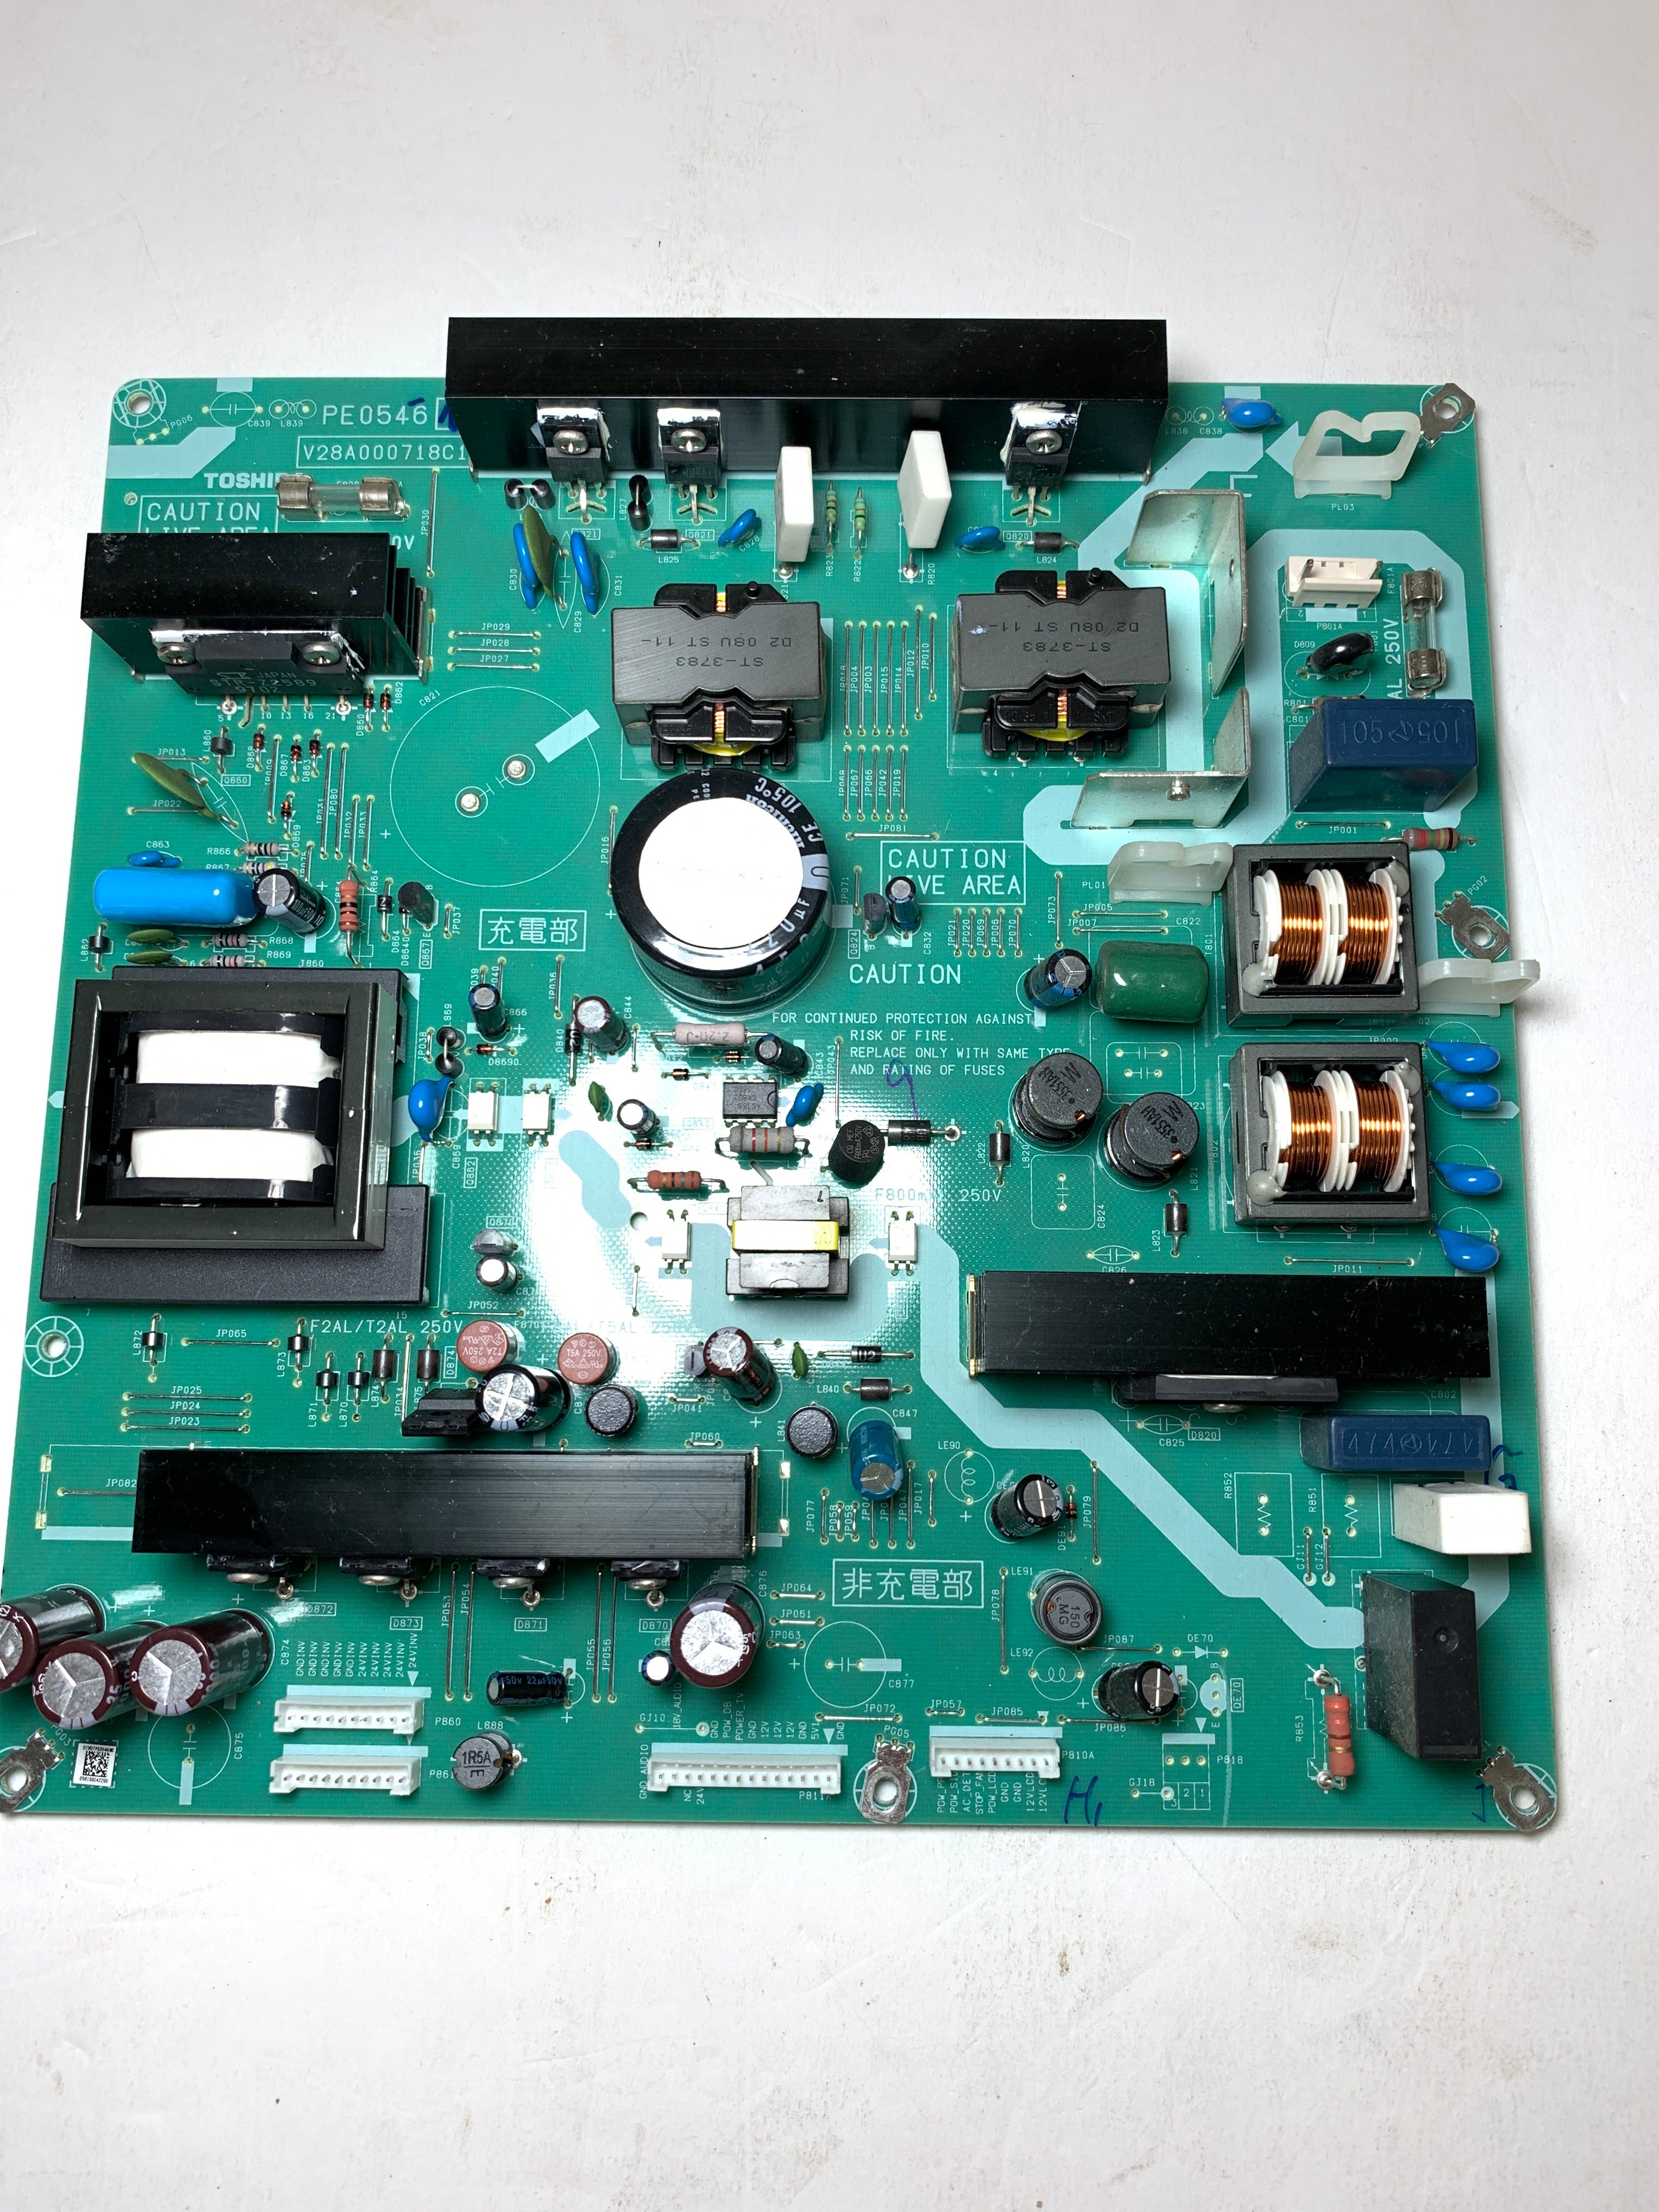 Toshiba 75010942 (V28A000718A1, V28A000718B1) Power Supply Unit